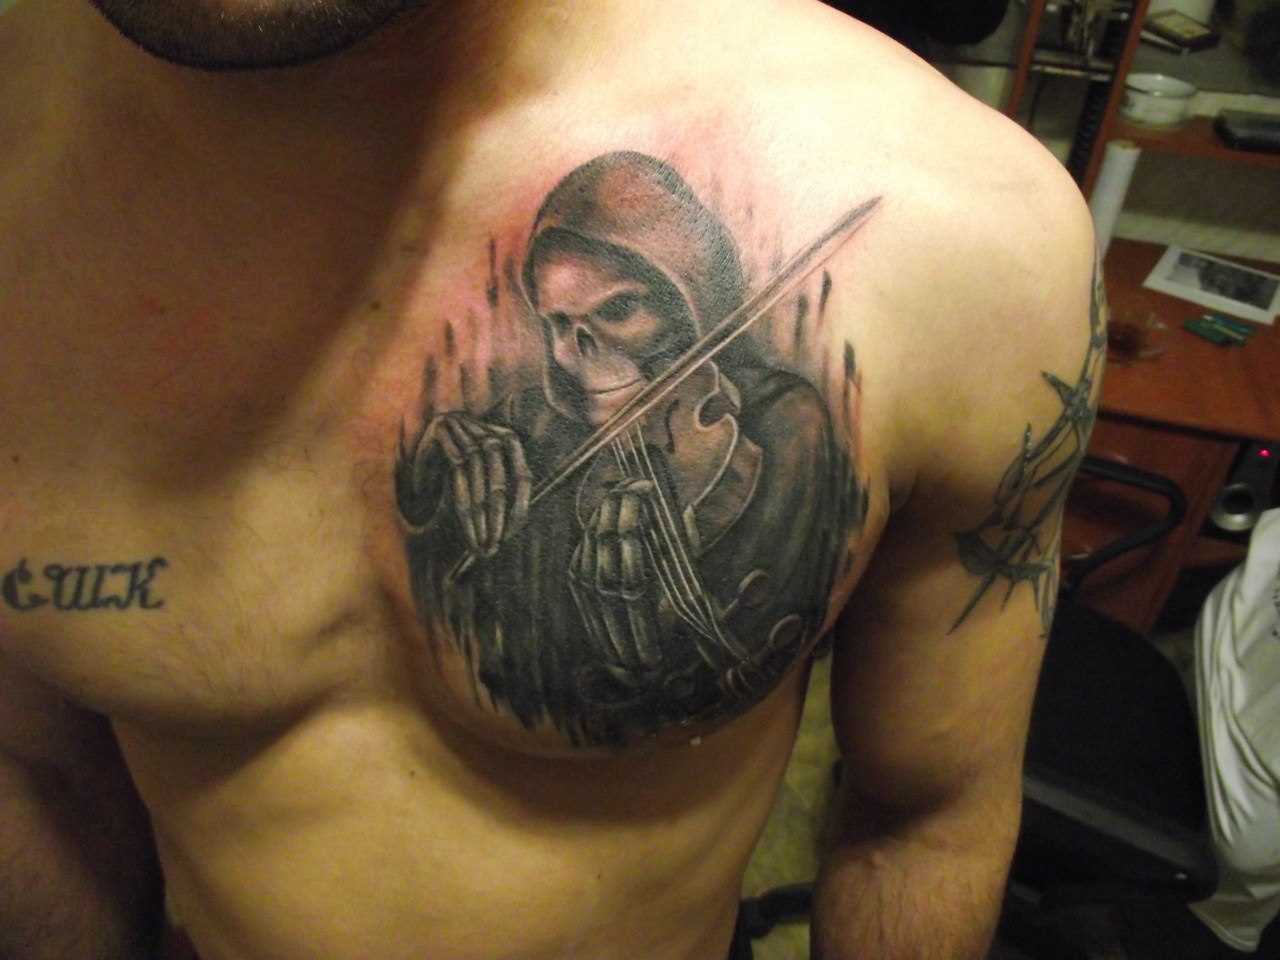 A tatuagem no peito do cara - esqueleto com violino